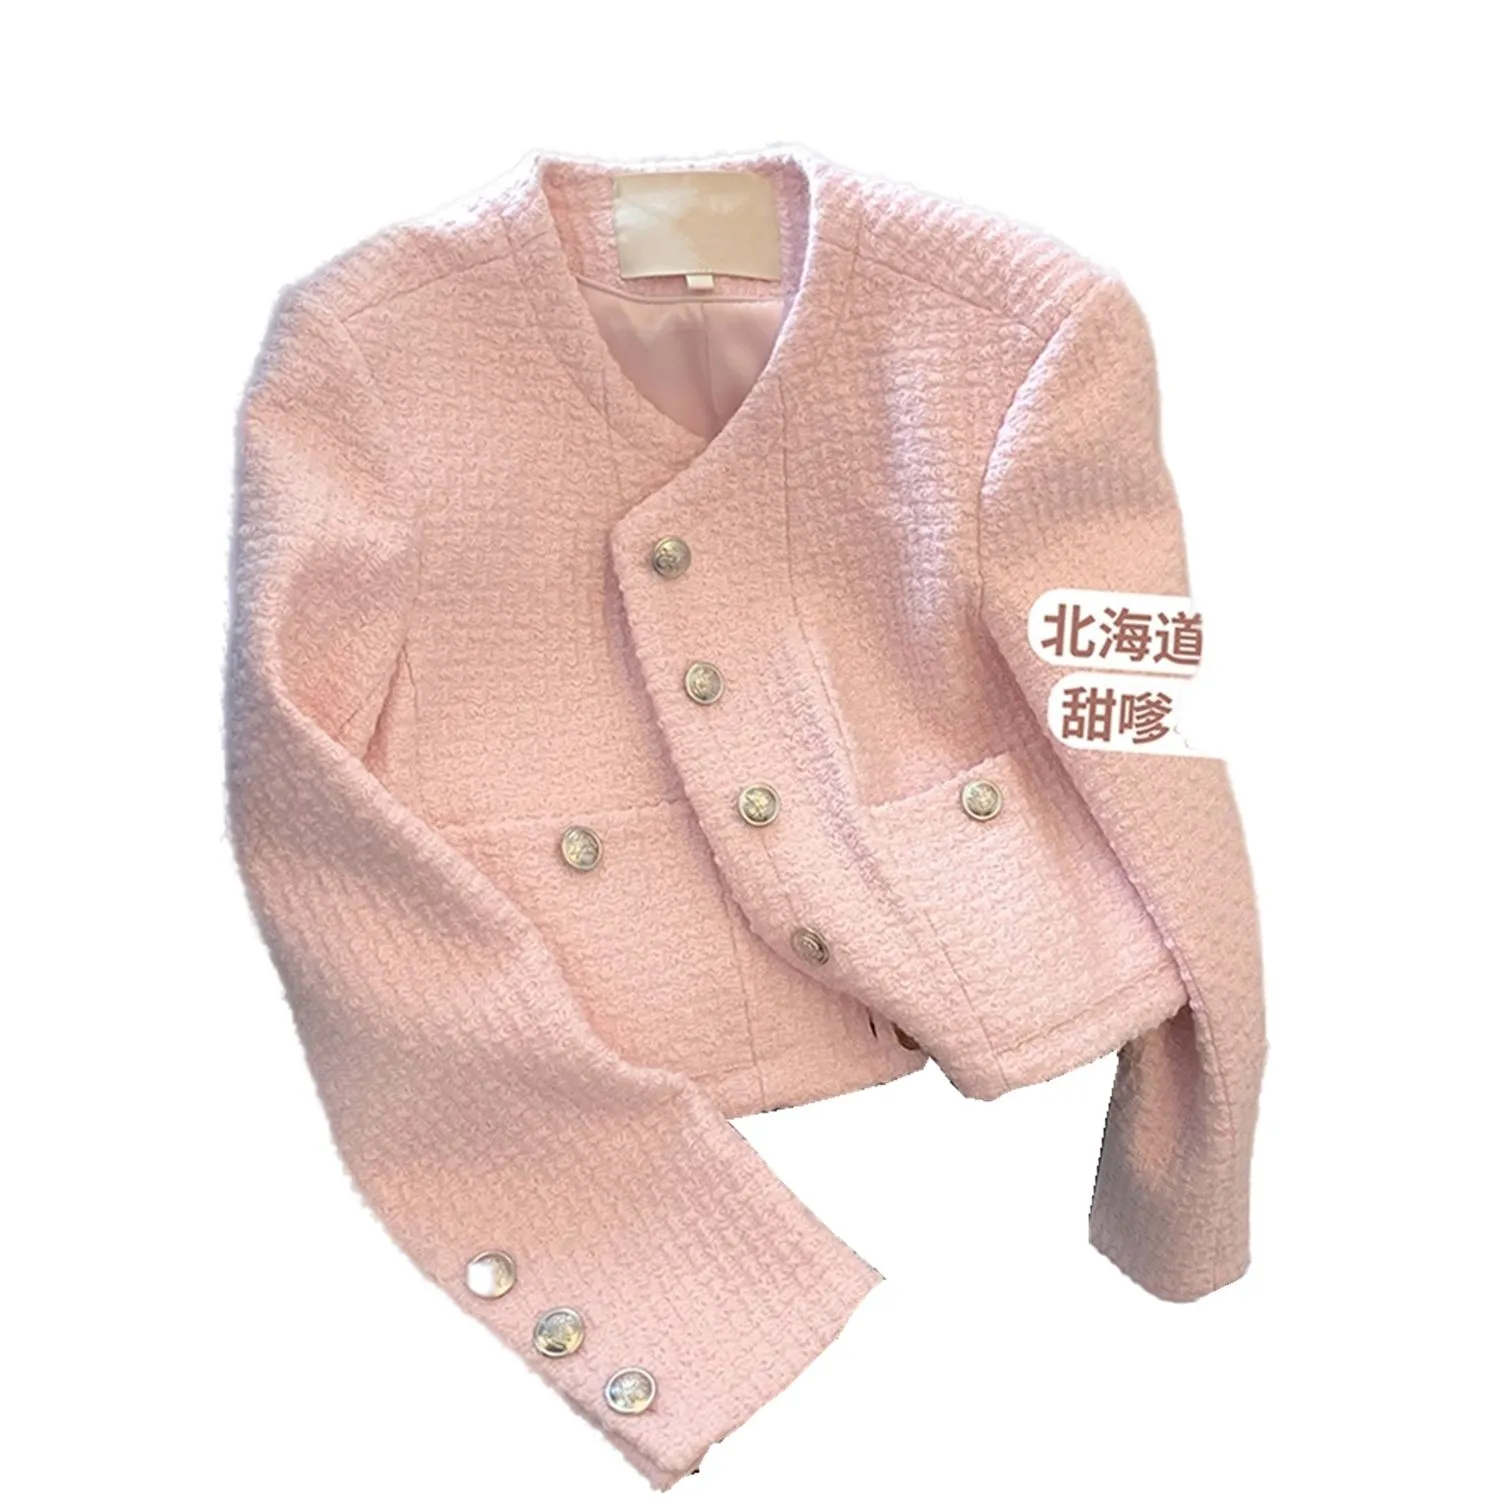 Damski tweedowy kurtka z długim rękawem różowy kolor o-drock single bered herme sml